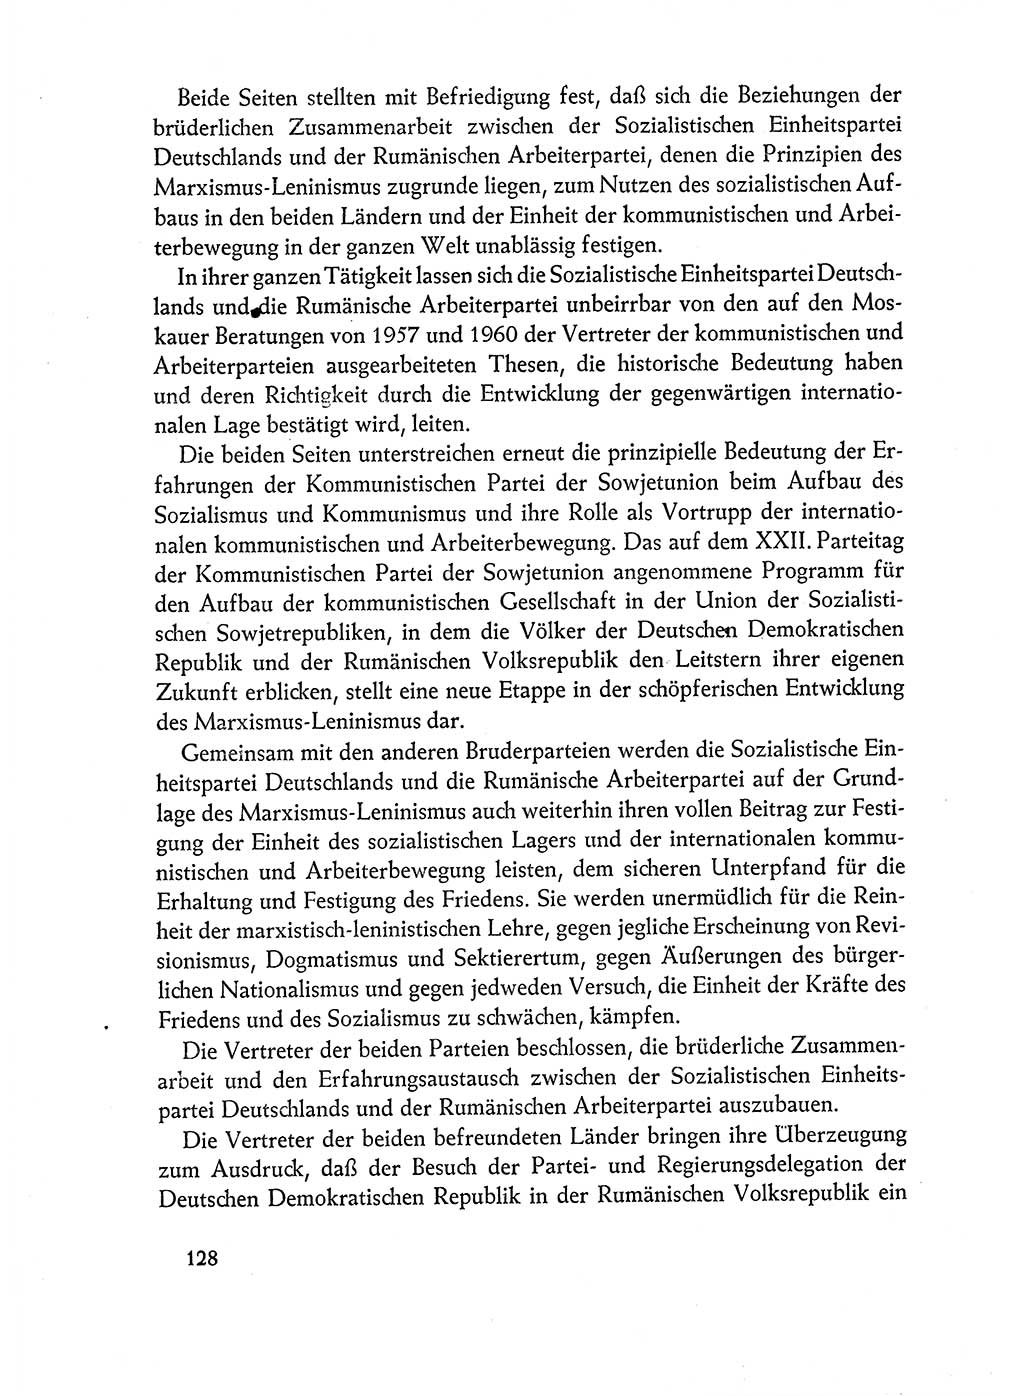 Dokumente der Sozialistischen Einheitspartei Deutschlands (SED) [Deutsche Demokratische Republik (DDR)] 1962-1963, Seite 128 (Dok. SED DDR 1962-1963, S. 128)